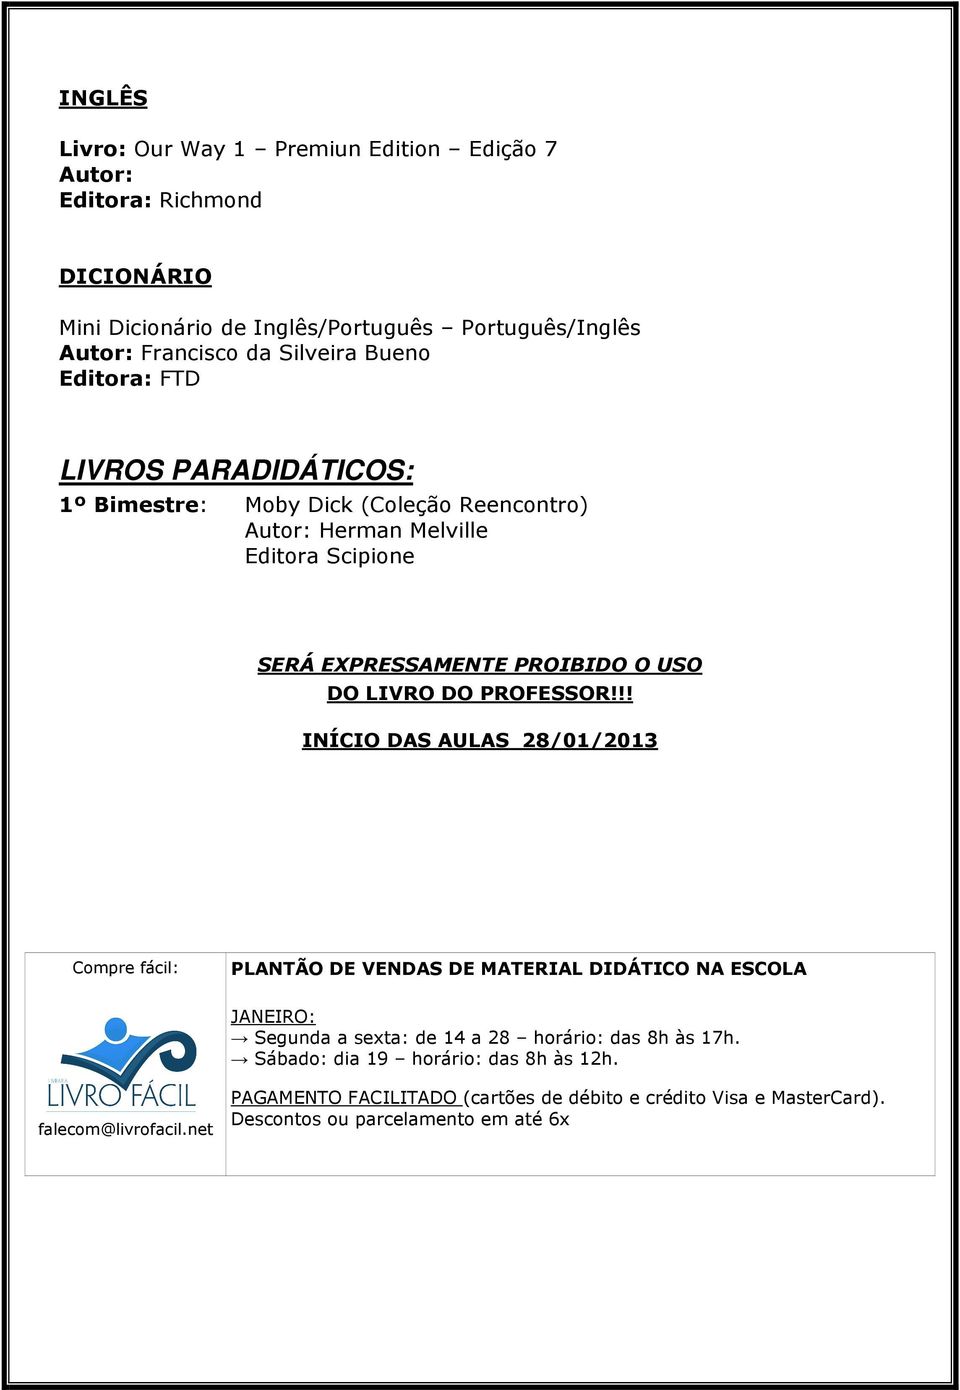 !! INÍCIO DAS AULAS 28/01/2013 Compre fácil: PLANTÃO DE VENDAS DE MATERIAL DIDÁTICO NA ESCOLA JANEIRO: Segunda a sexta: de 14 a 28 horário: das 8h às 17h.